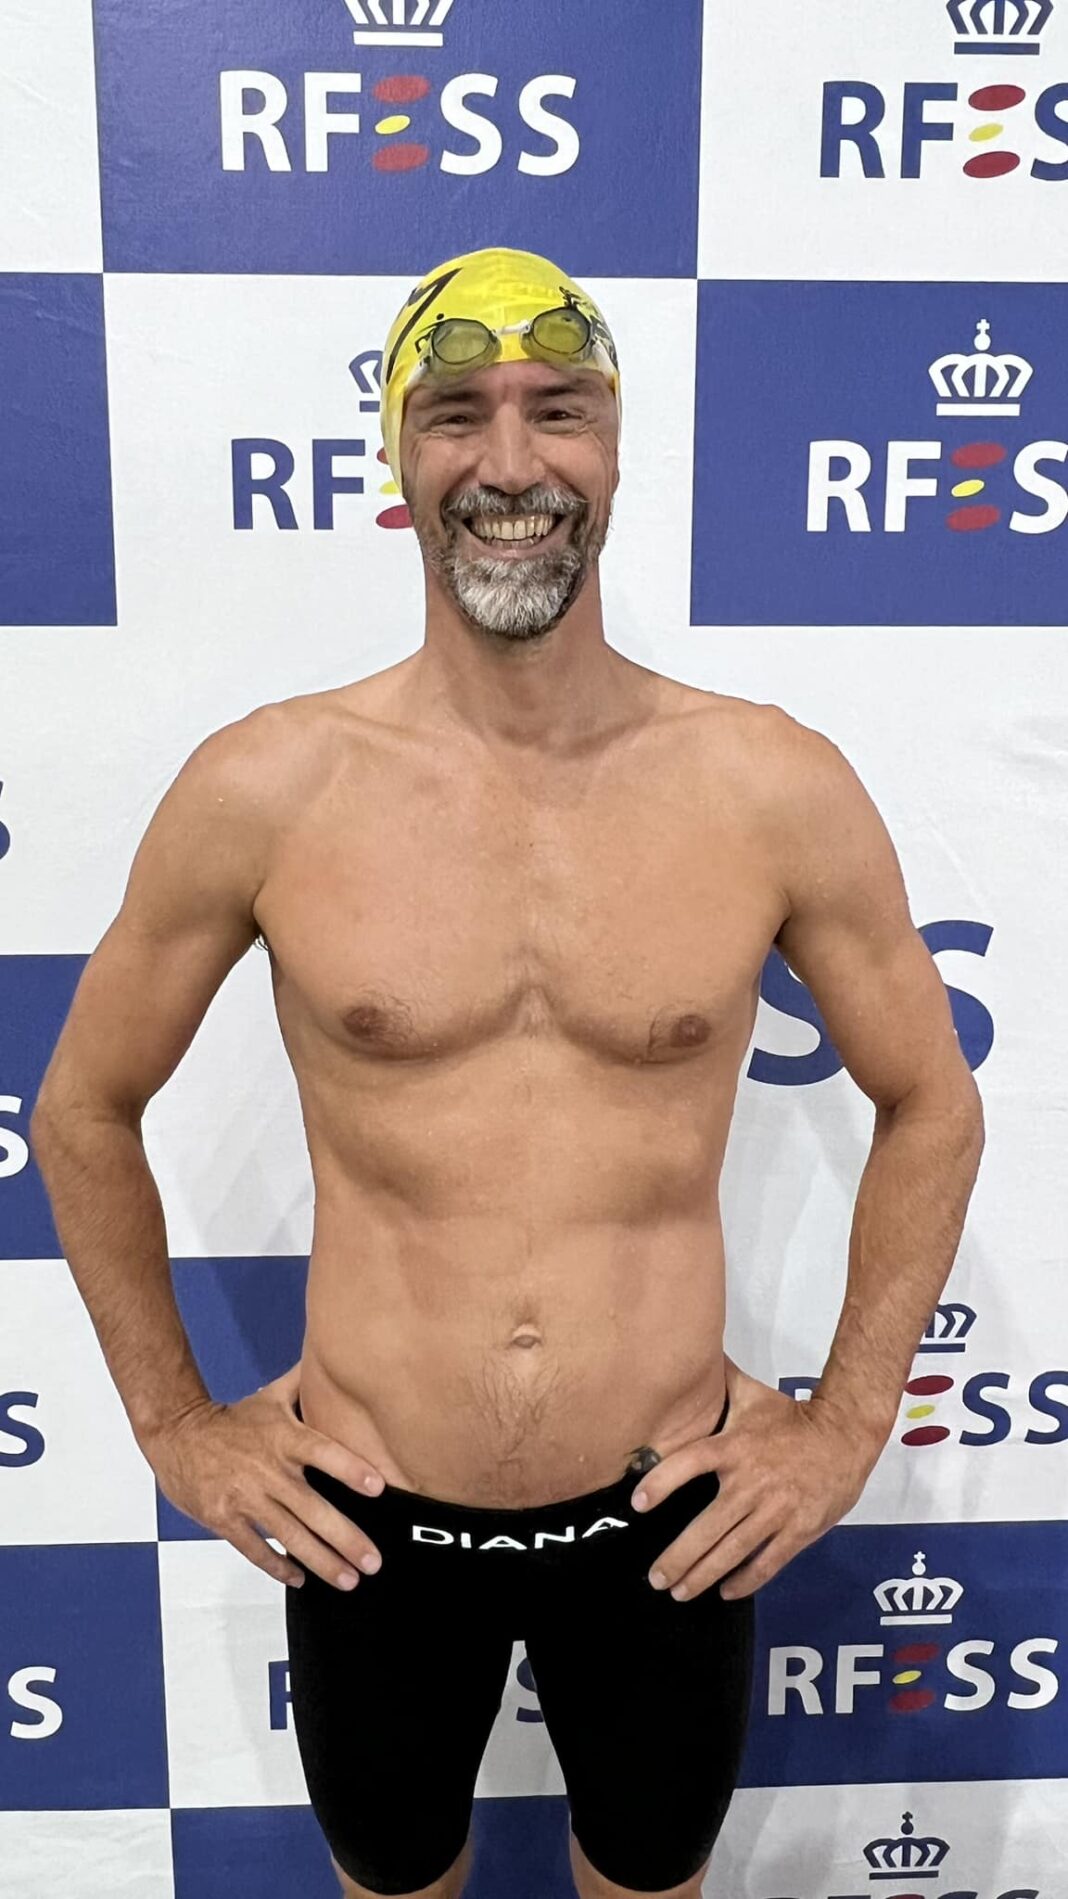 Marcello Tonelli (Club Natación Martiánez Coral Hotels) – Récord del Mundo 100 metros combinada de salvamento categoría máster masculina (01:11:06 frente a 01:11:45).